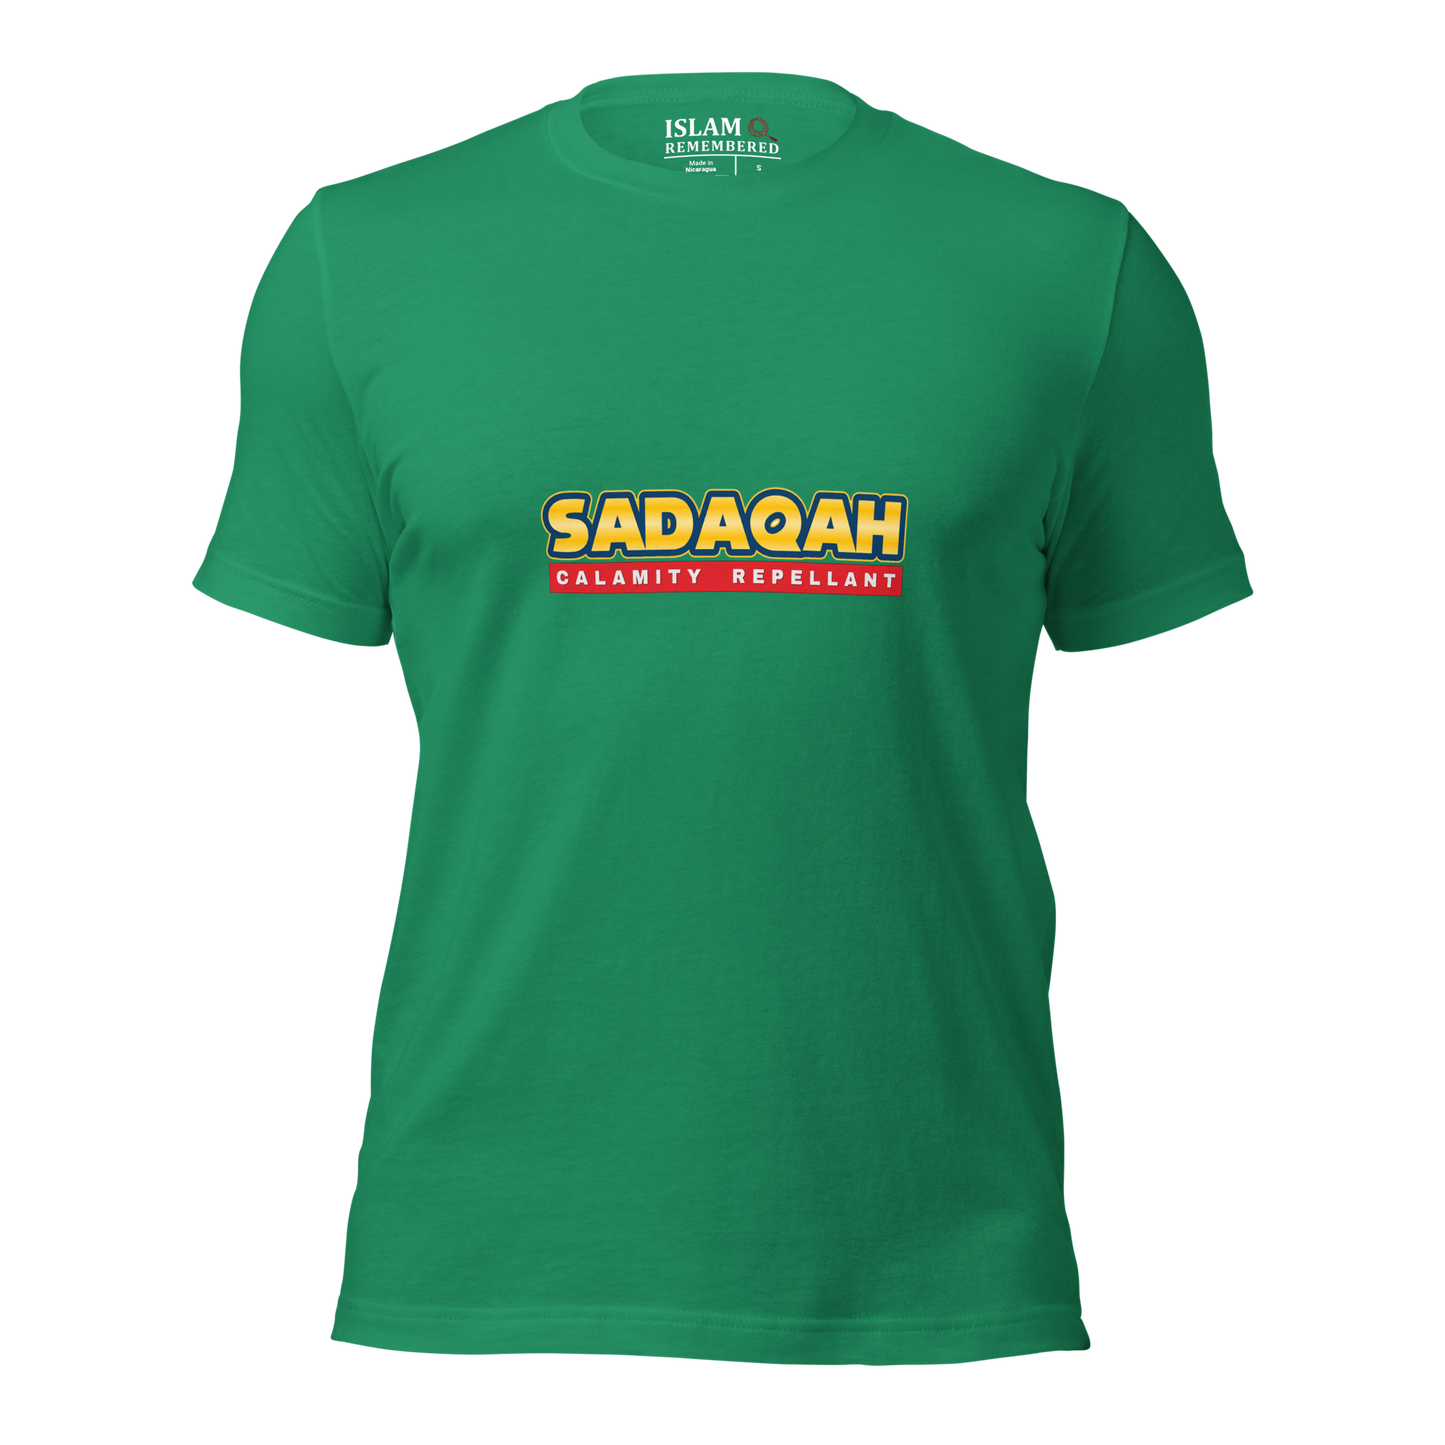 ADULT T-Shirt - SADAQAH CALAMITY REPELLANT